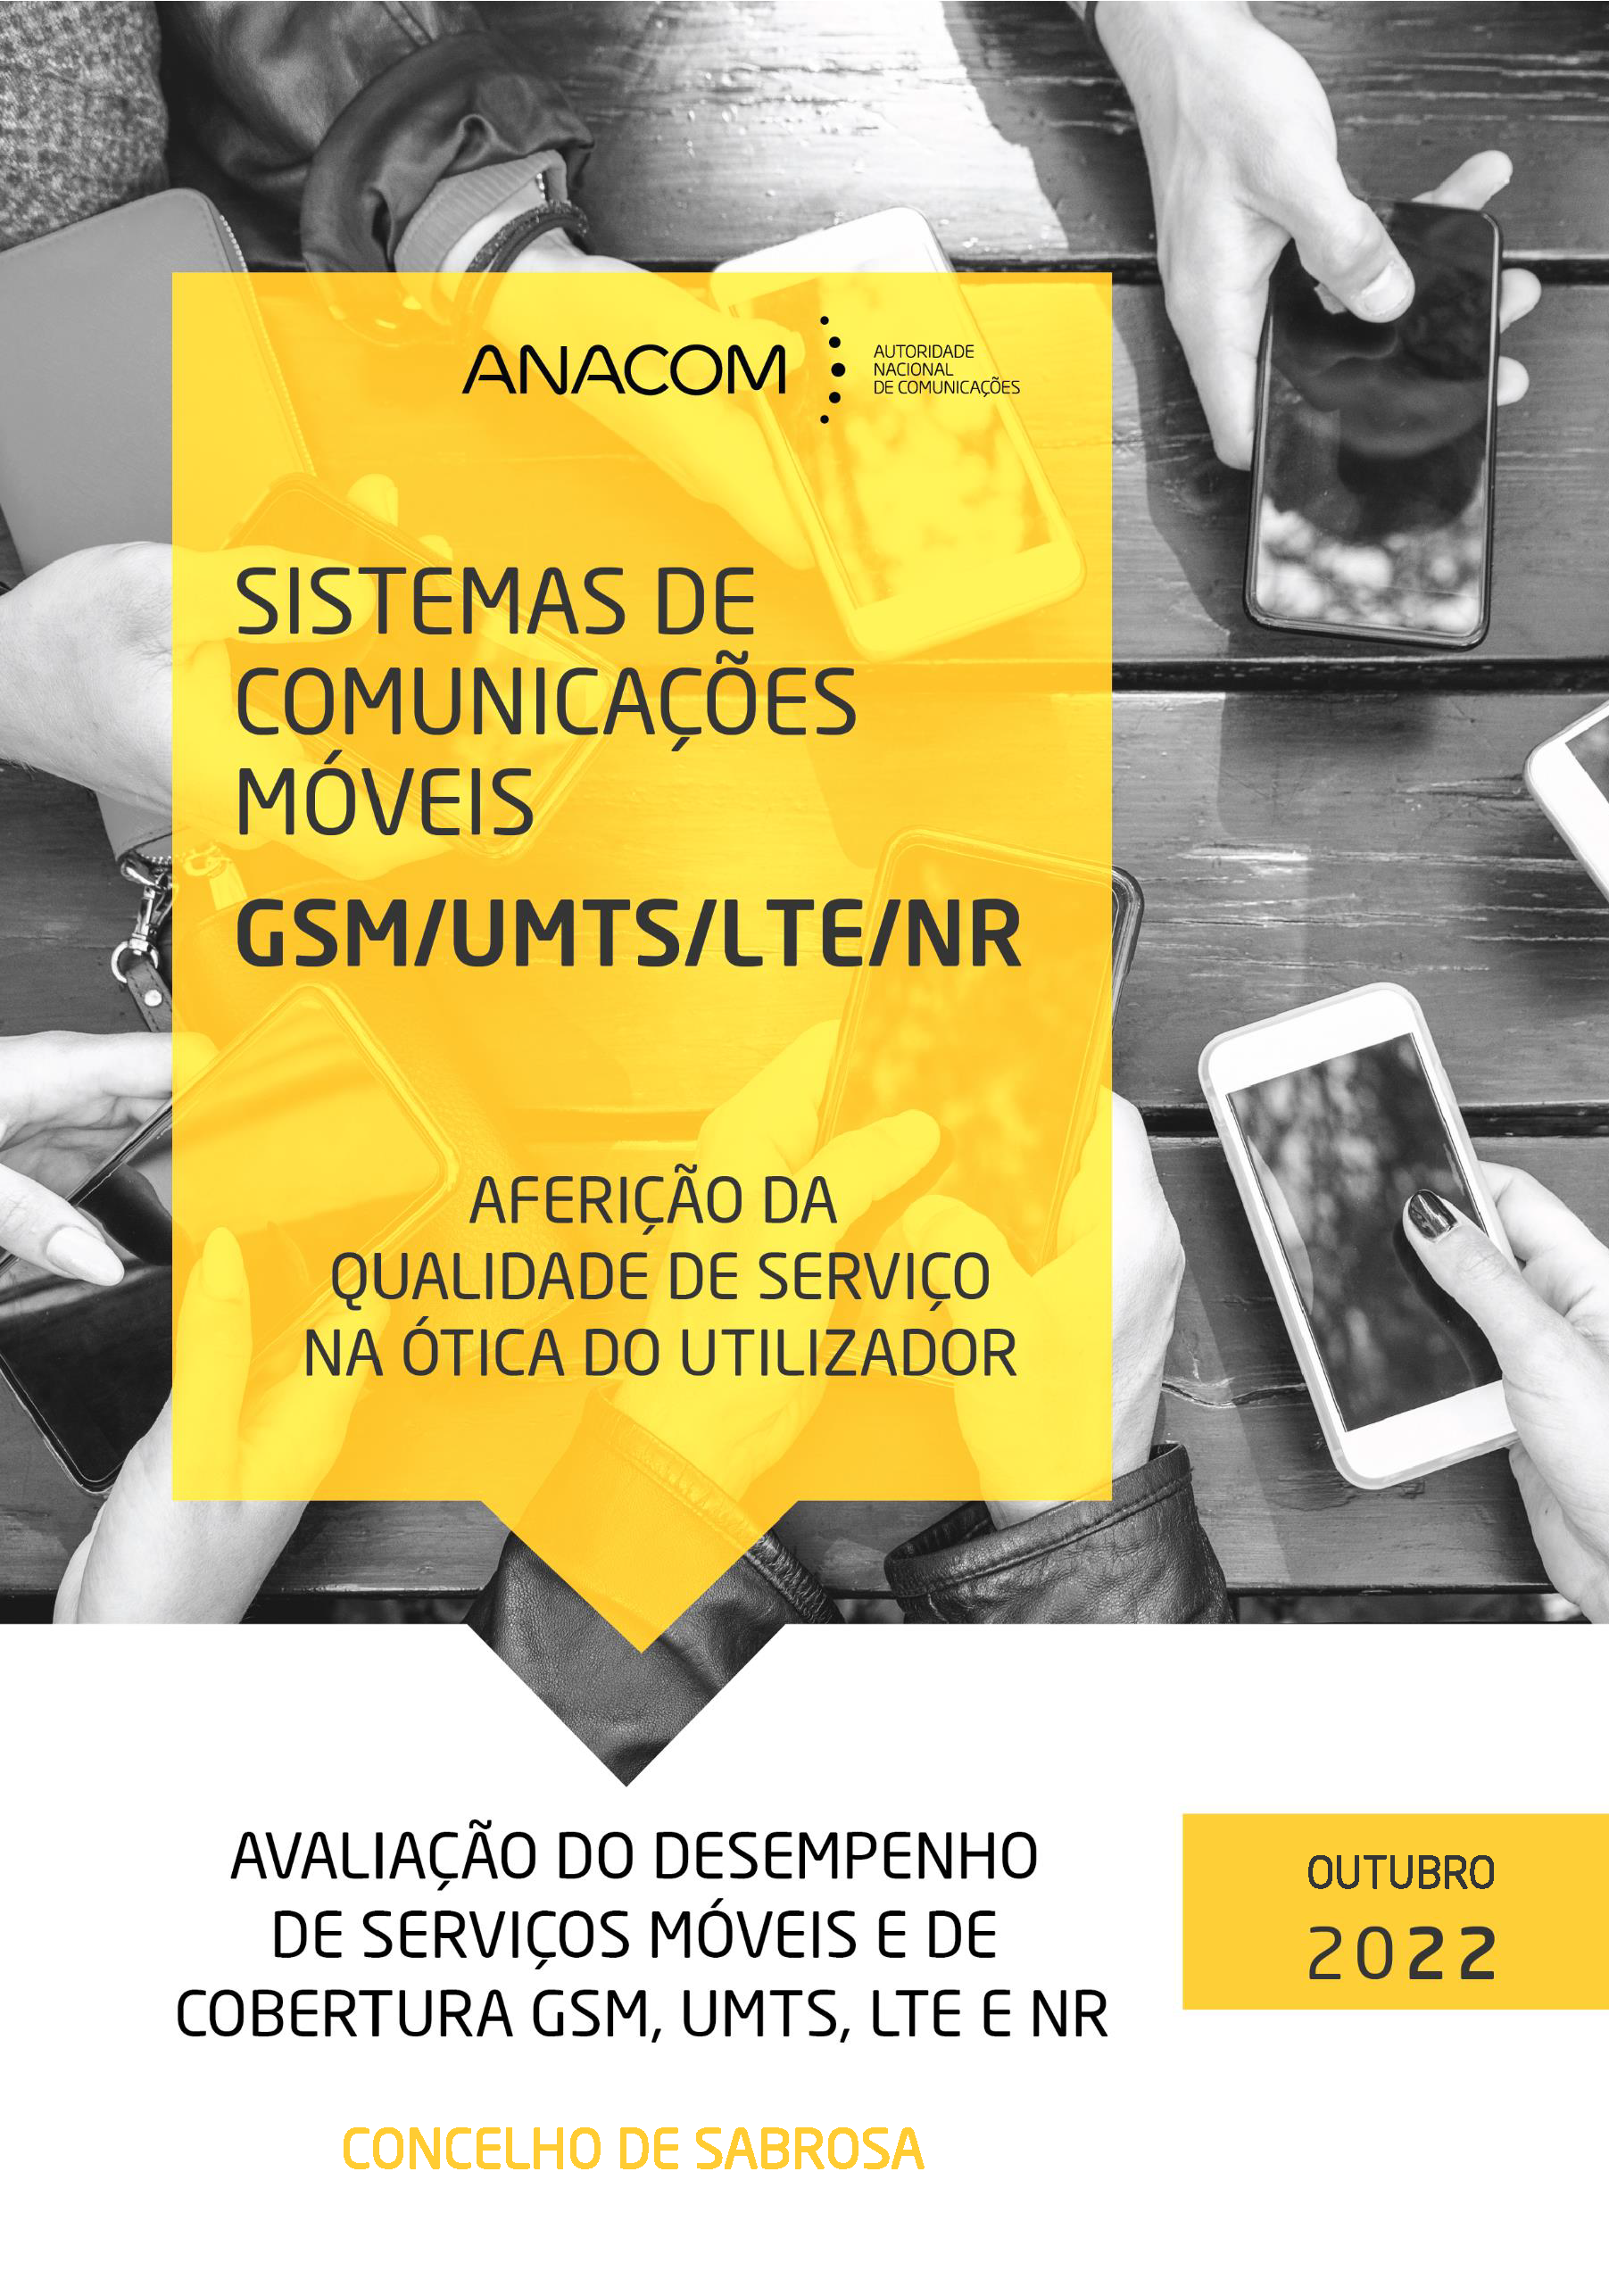 Avaliação do desempenho de serviços móveis e de cobertura GSM, UMTS, LTE e NR no Concelho de Sabrosa